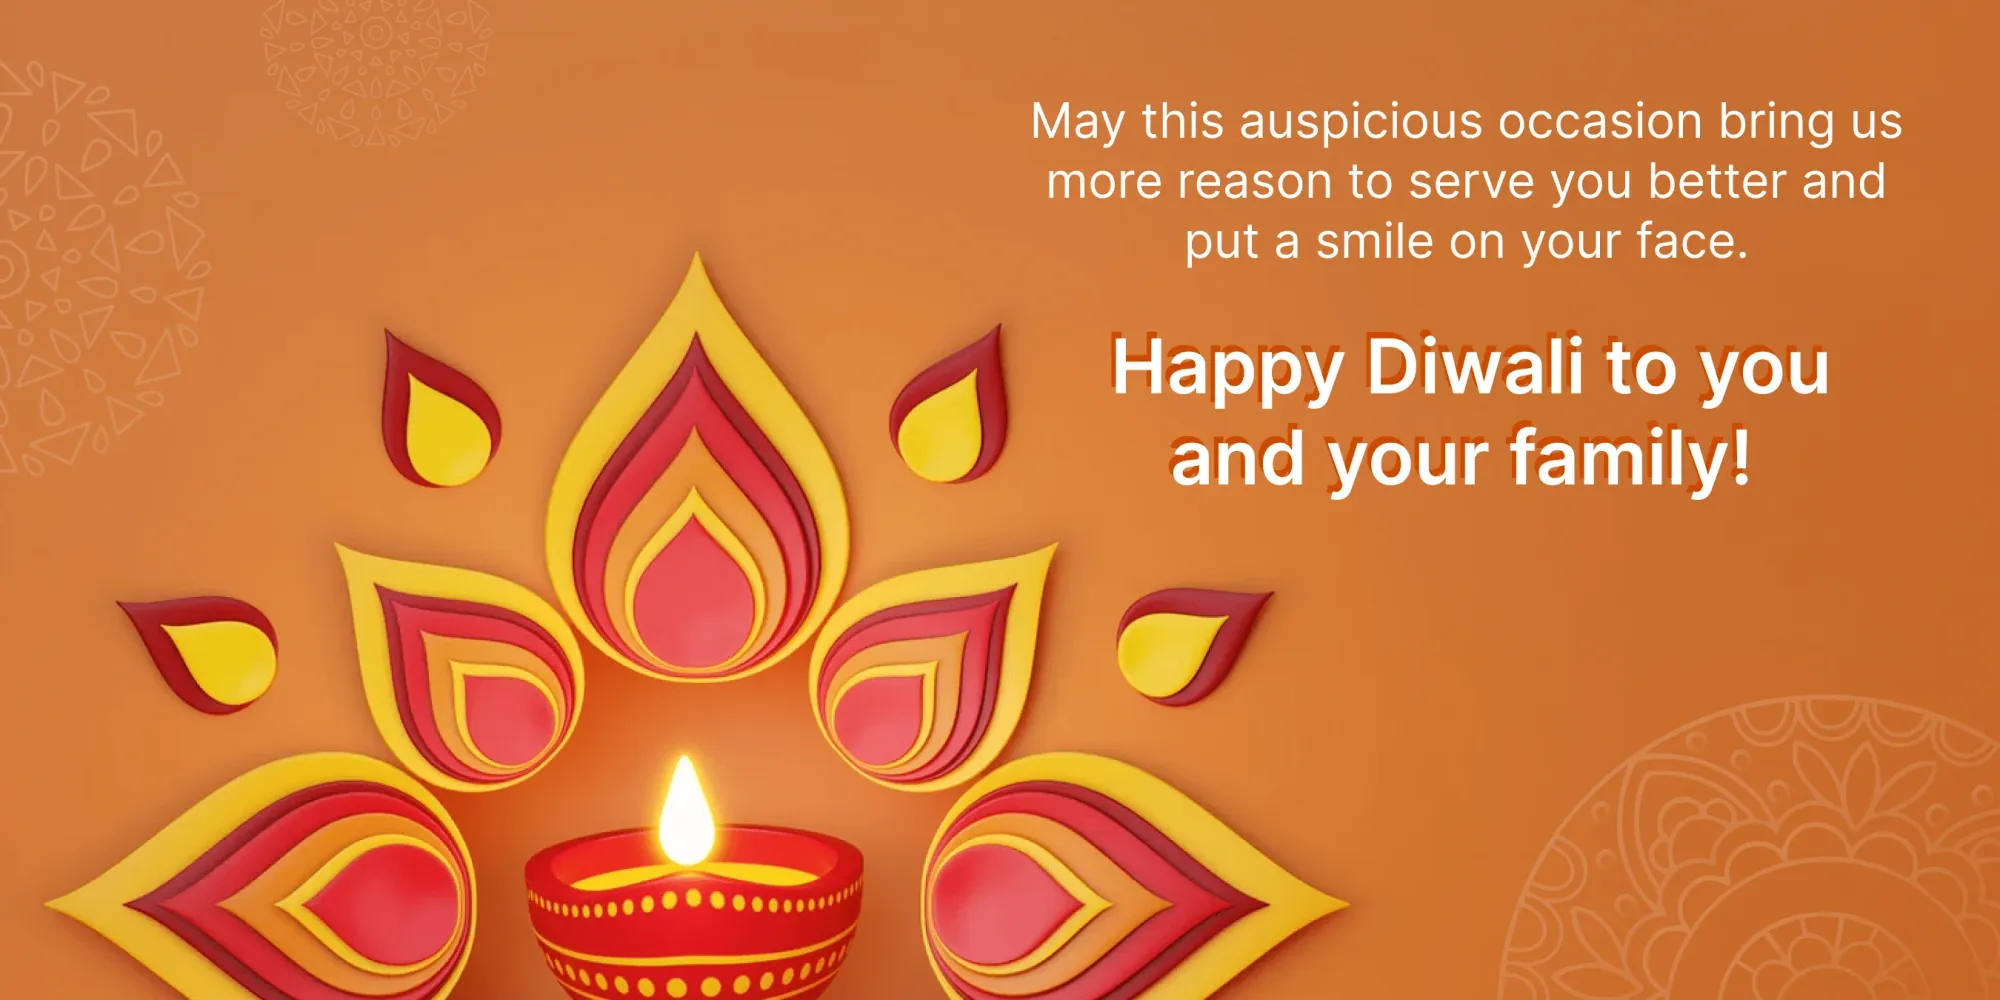 Meilleurs vœux de Diwali pour les clients